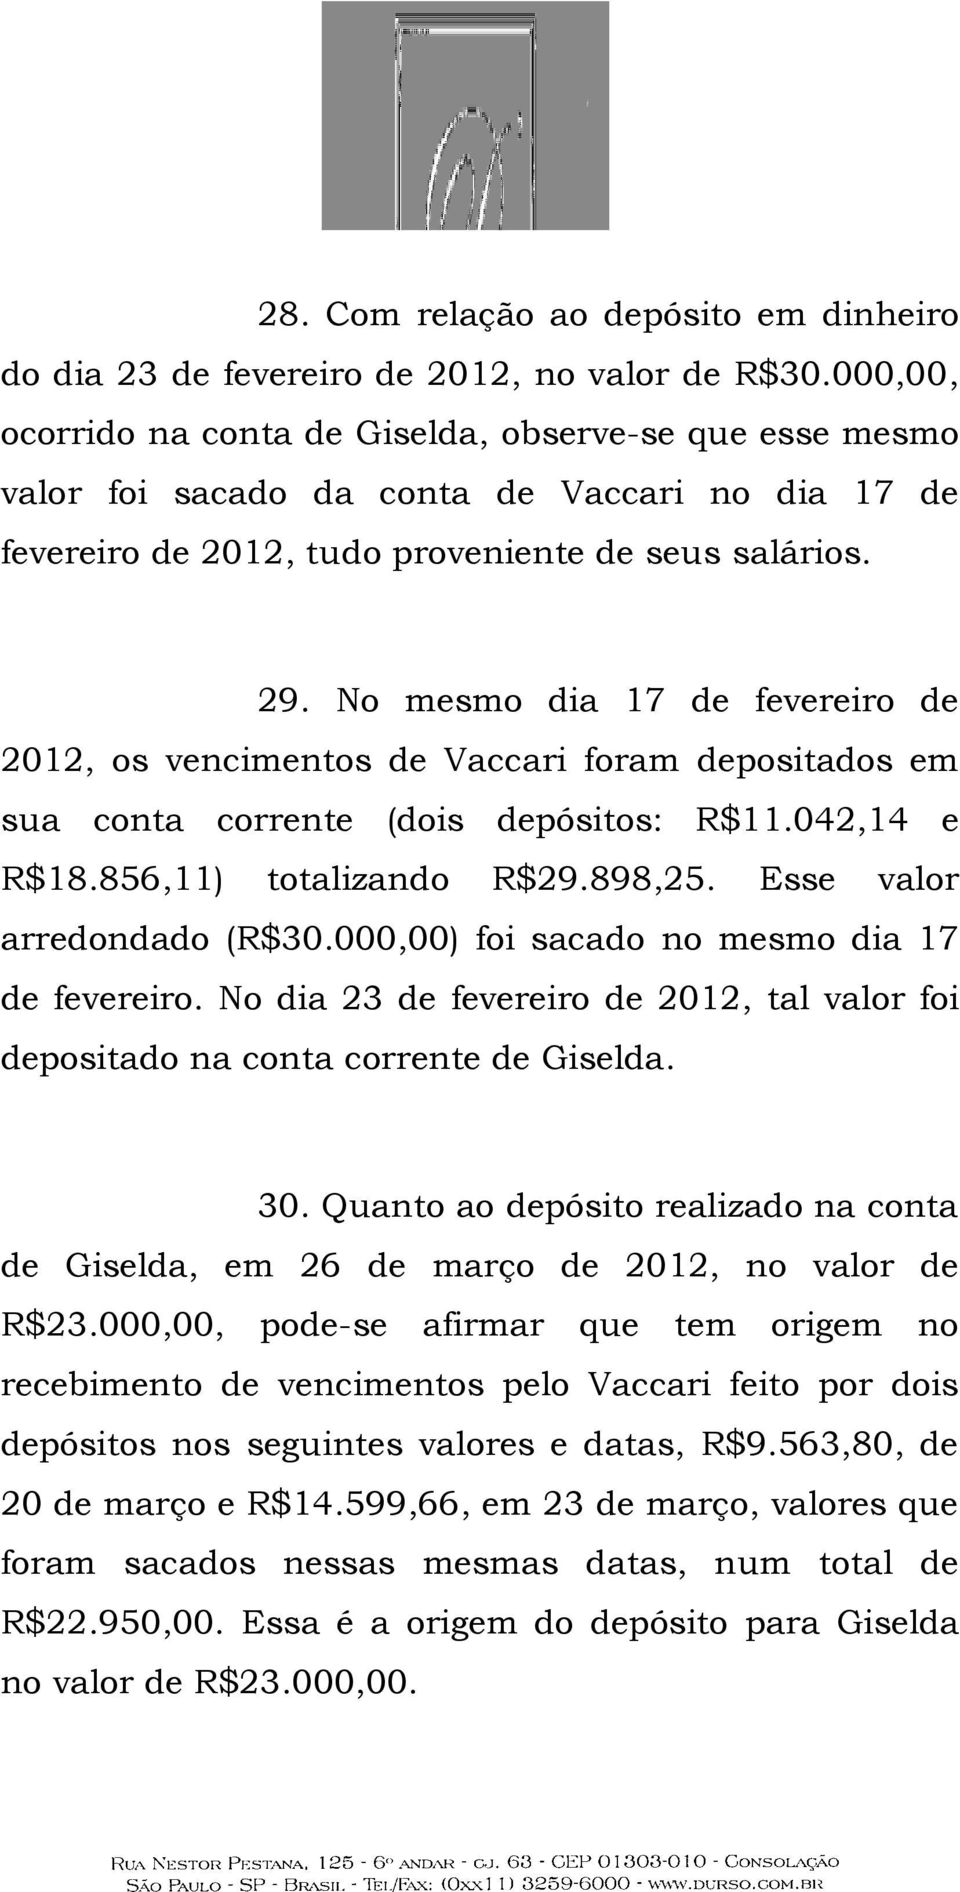 No mesmo dia 17 de fevereiro de 2012, os vencimentos de Vaccari foram depositados em sua conta corrente (dois depósitos: R$11.042,14 e R$18.856,11) totalizando R$29.898,25.